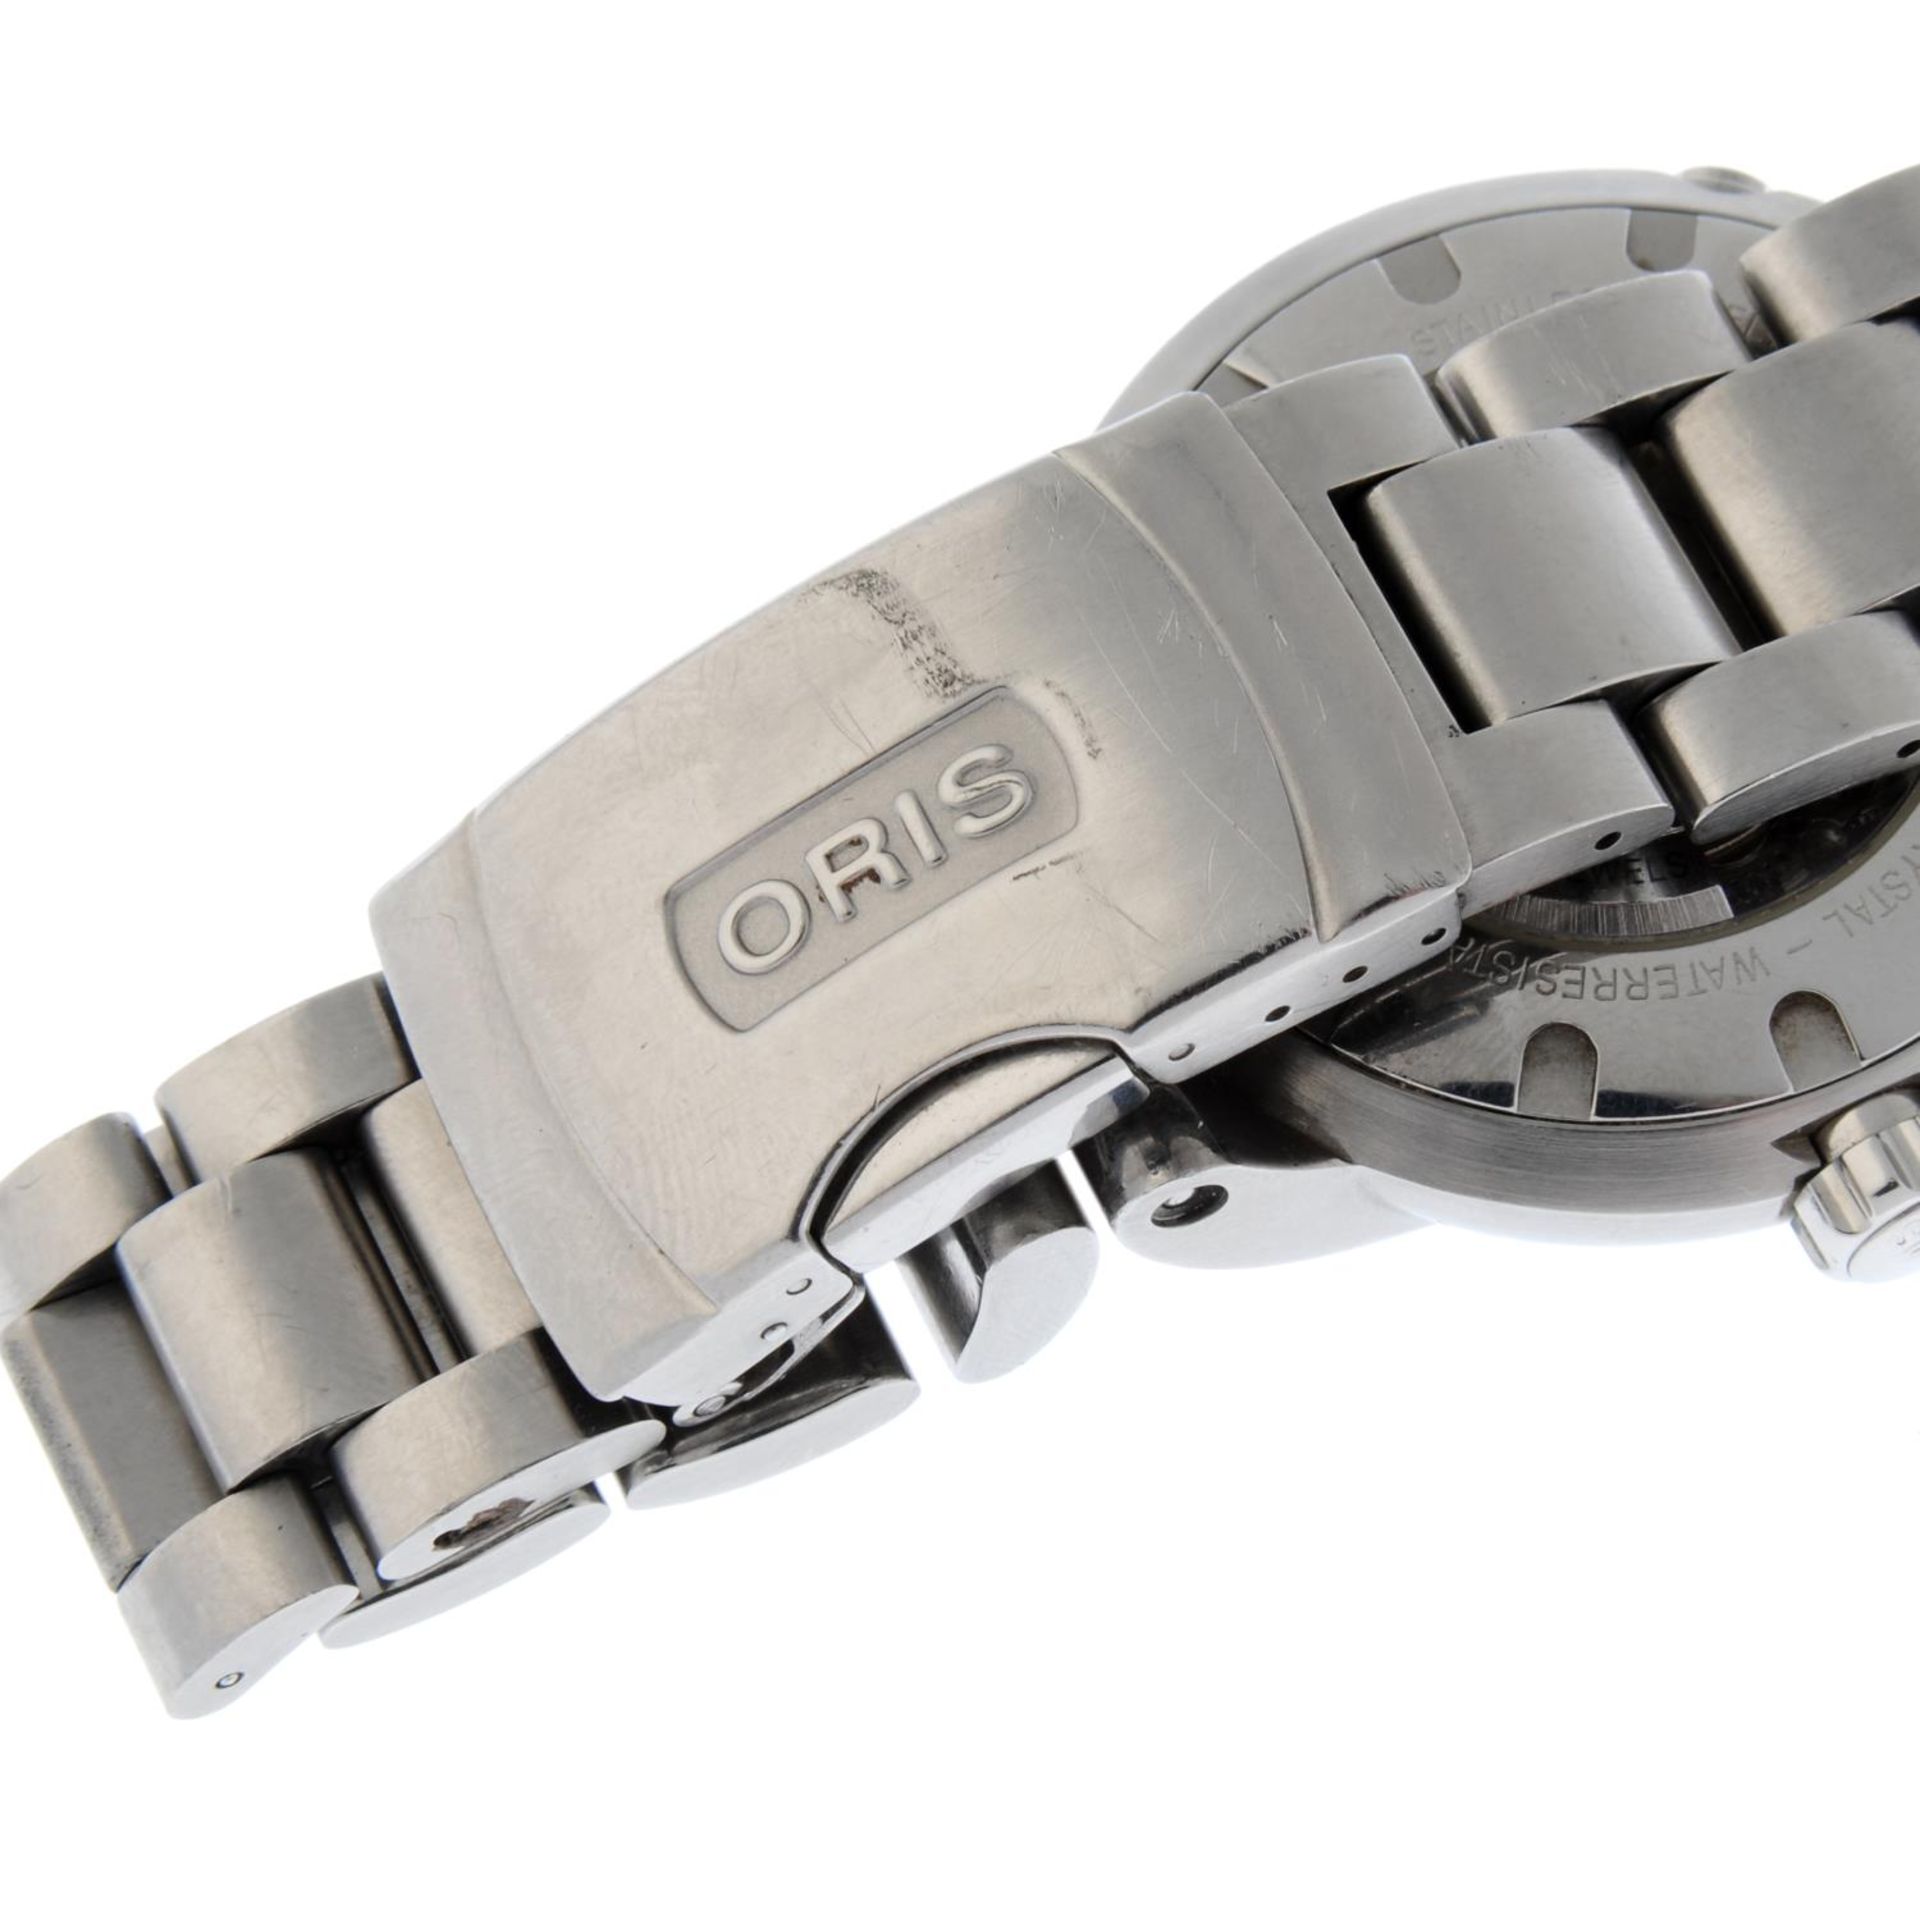 ORIS - a TT1 Worldtimer bracelet watch. - Bild 2 aus 4